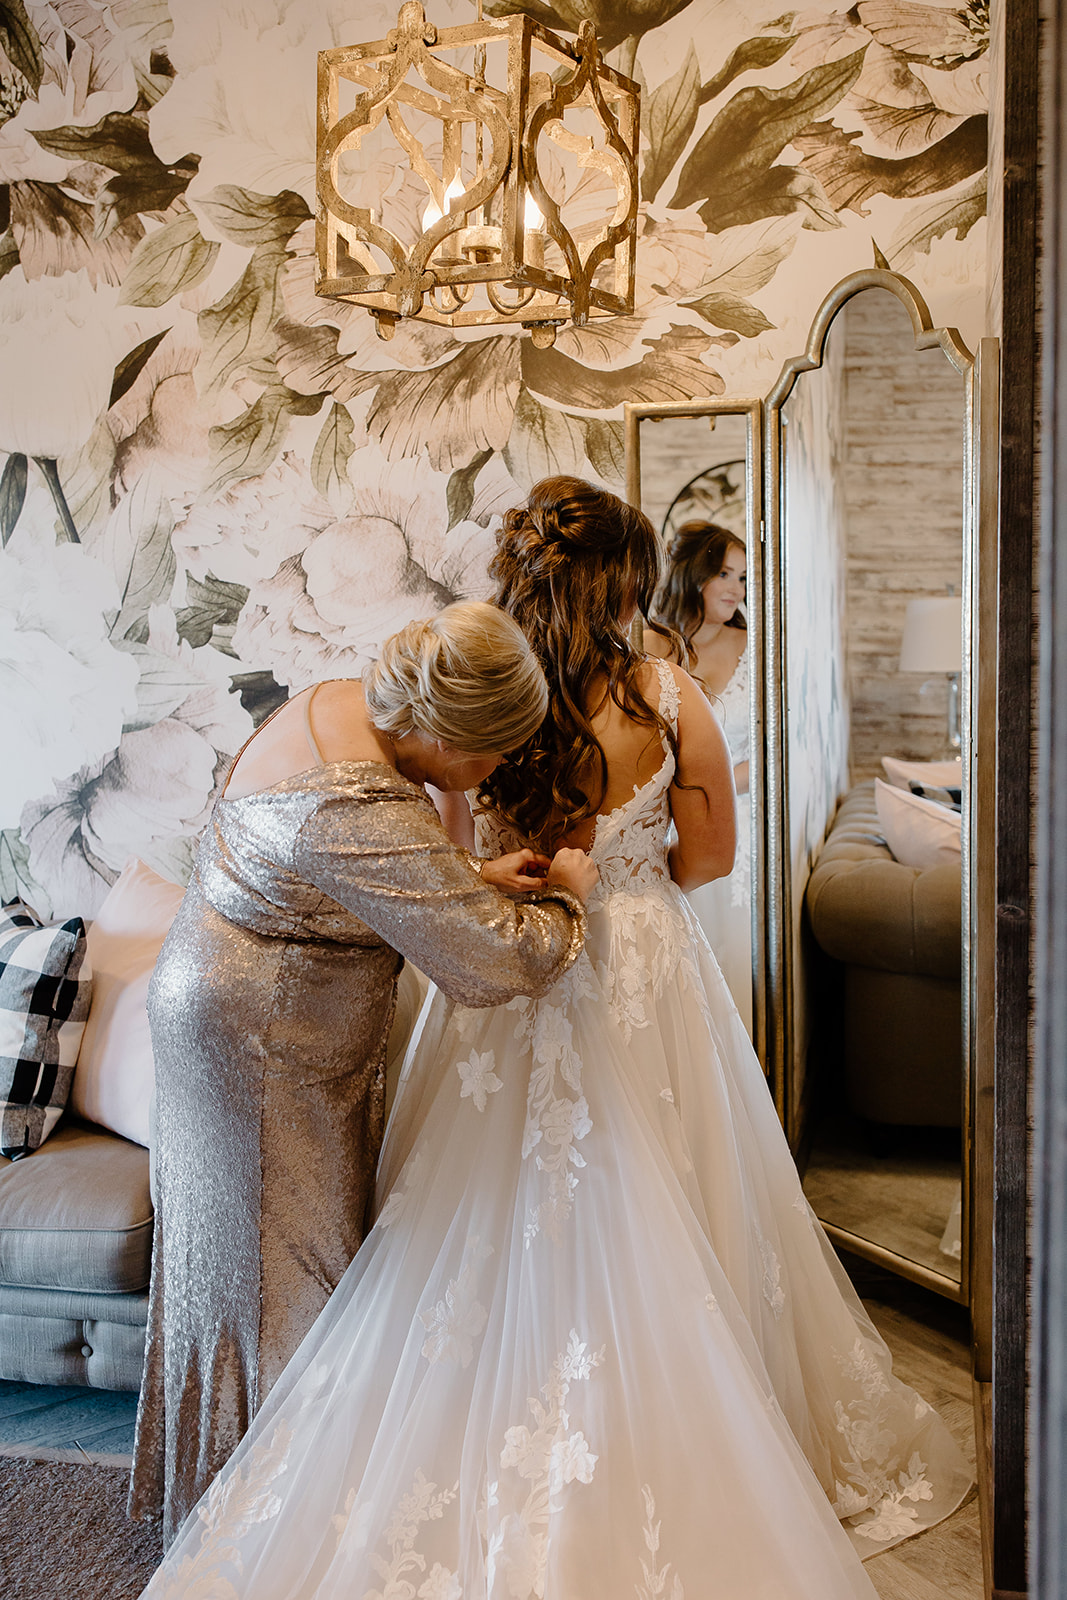 Mother zips her daughter's wedding dress